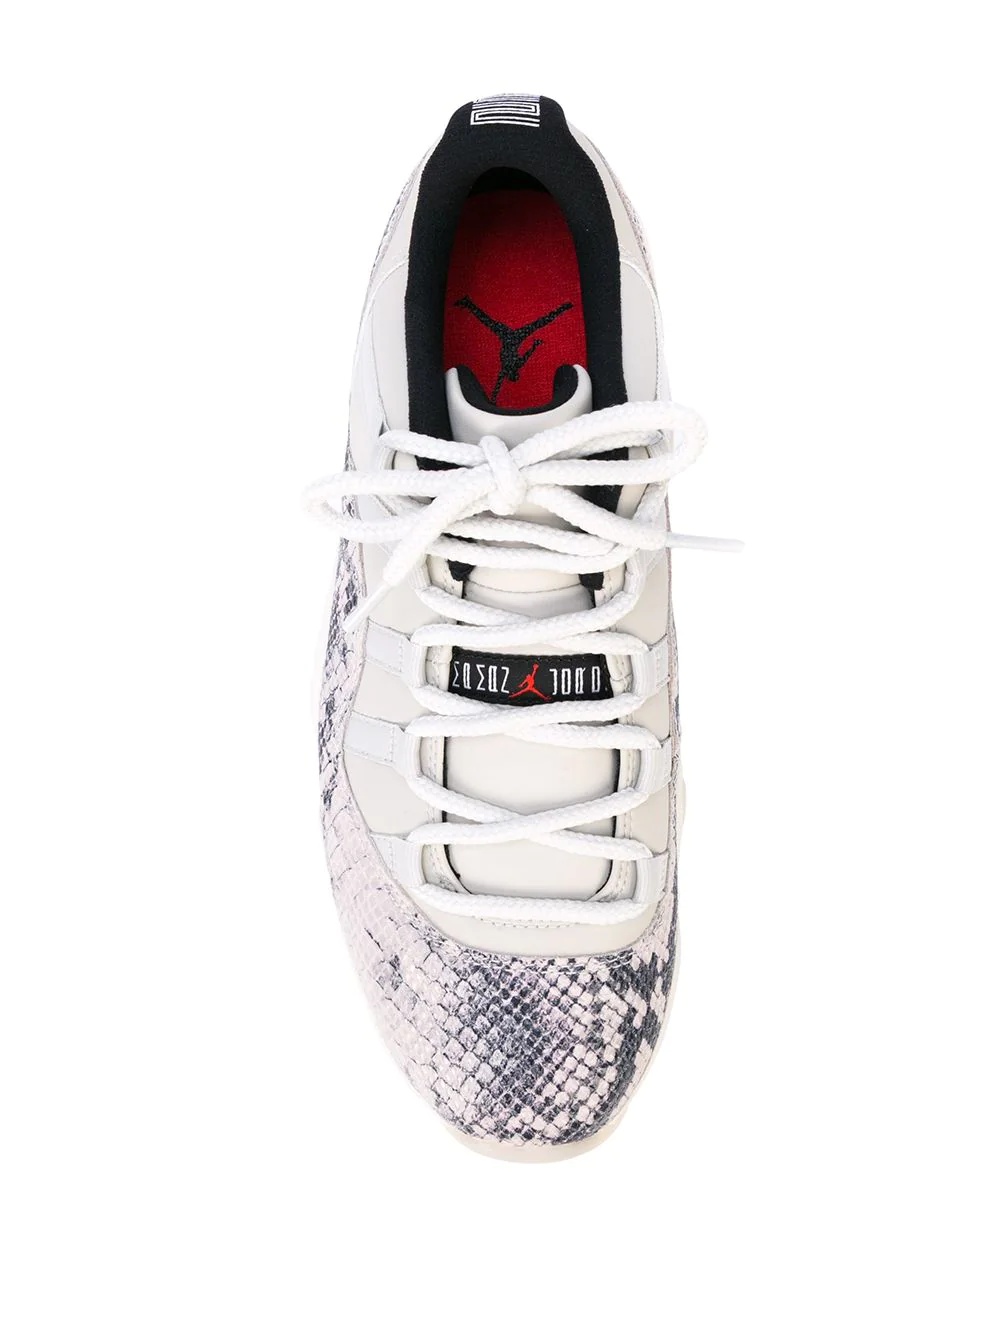 Air Jordan 11 Retro Low "Light Bone" sneakers - 4